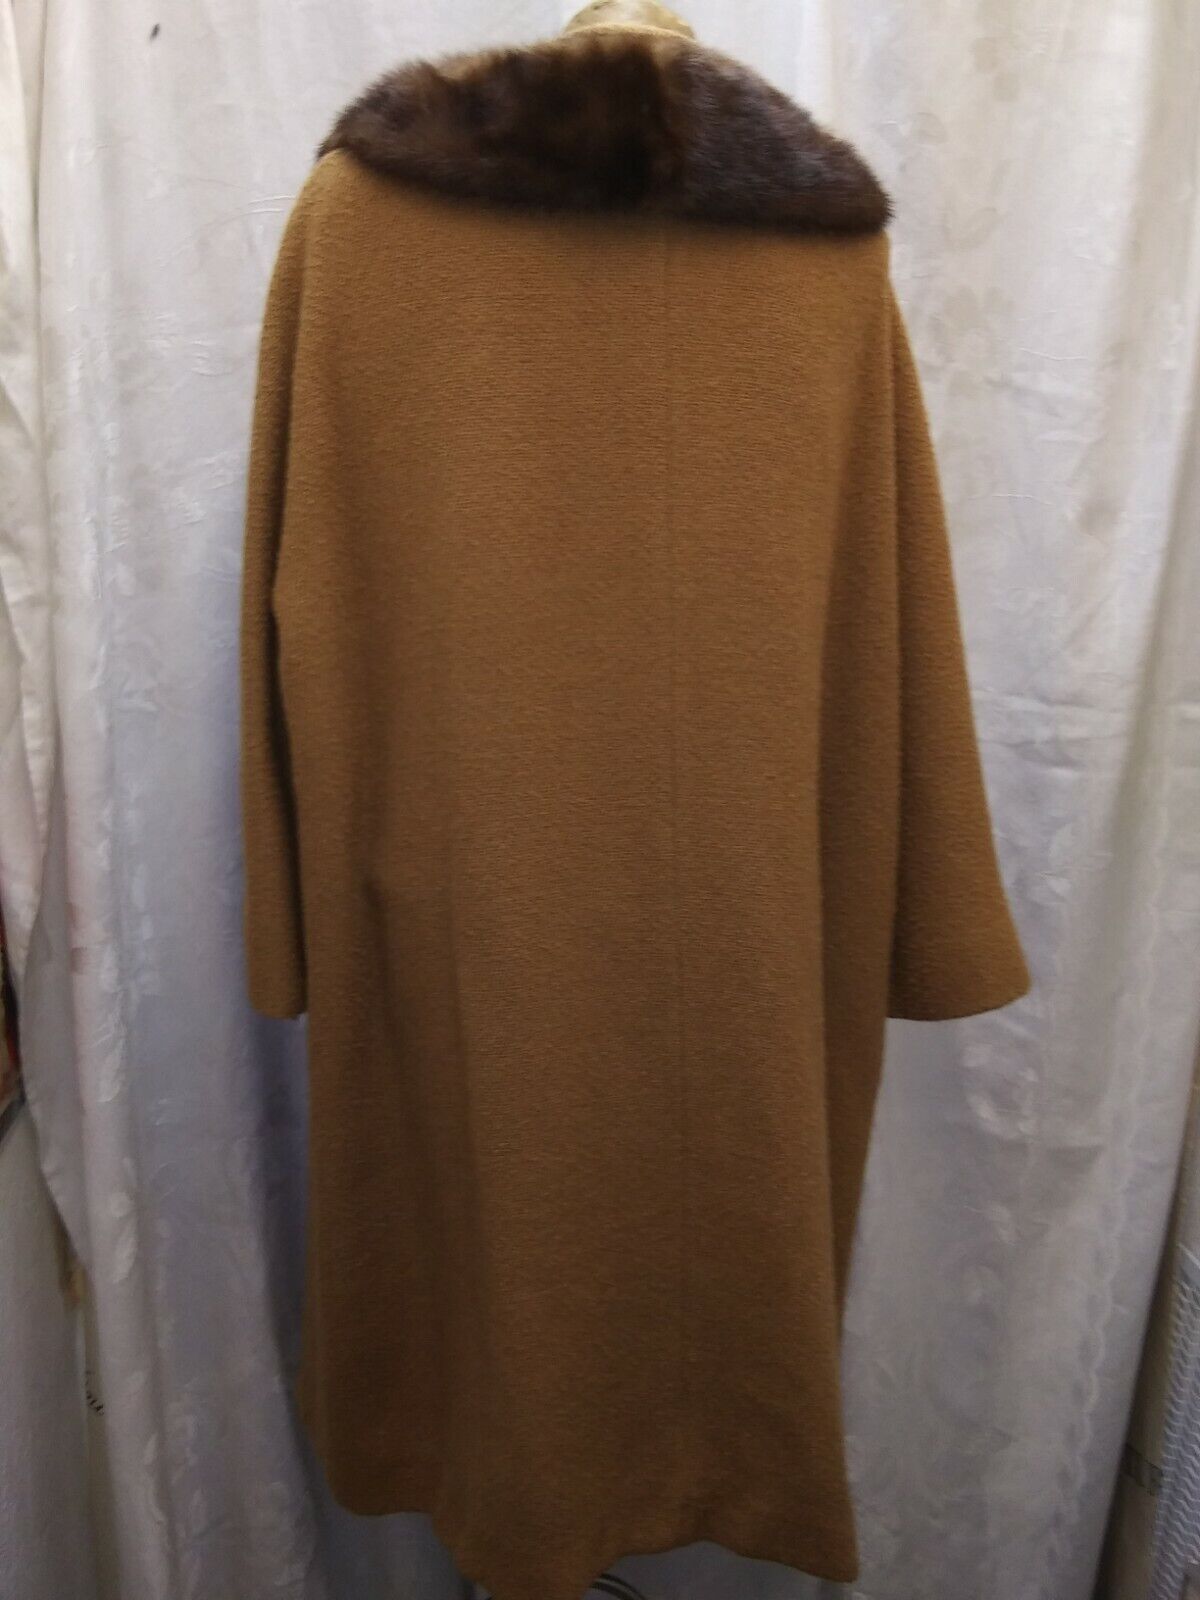 Vintage 1950's Golden Brown Wool & Mink Coat by I… - image 4